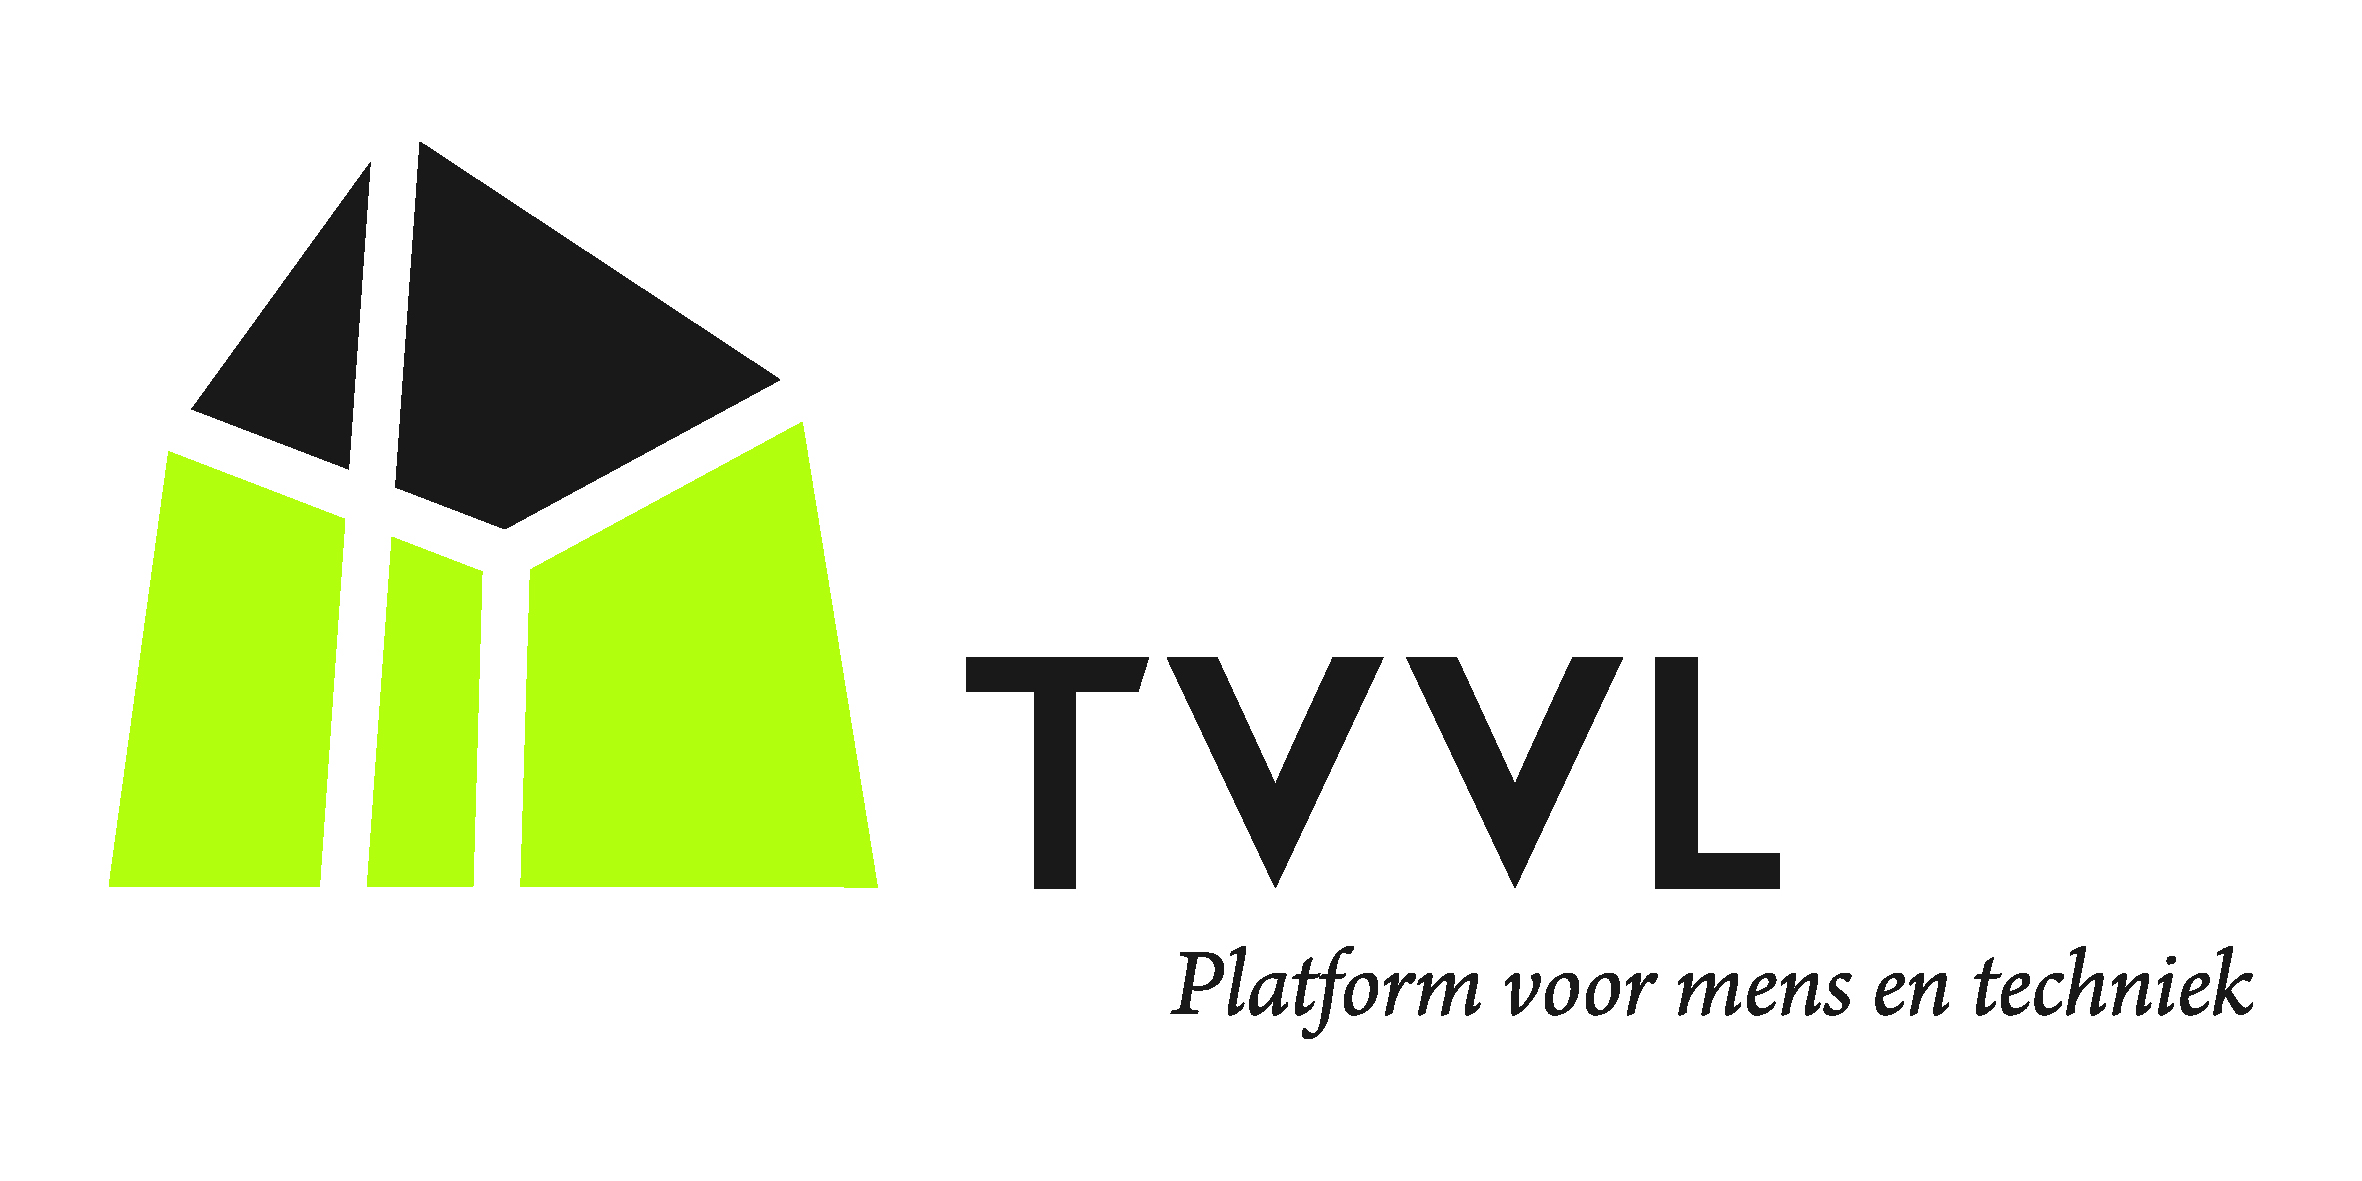 TVVL_Logo_FC